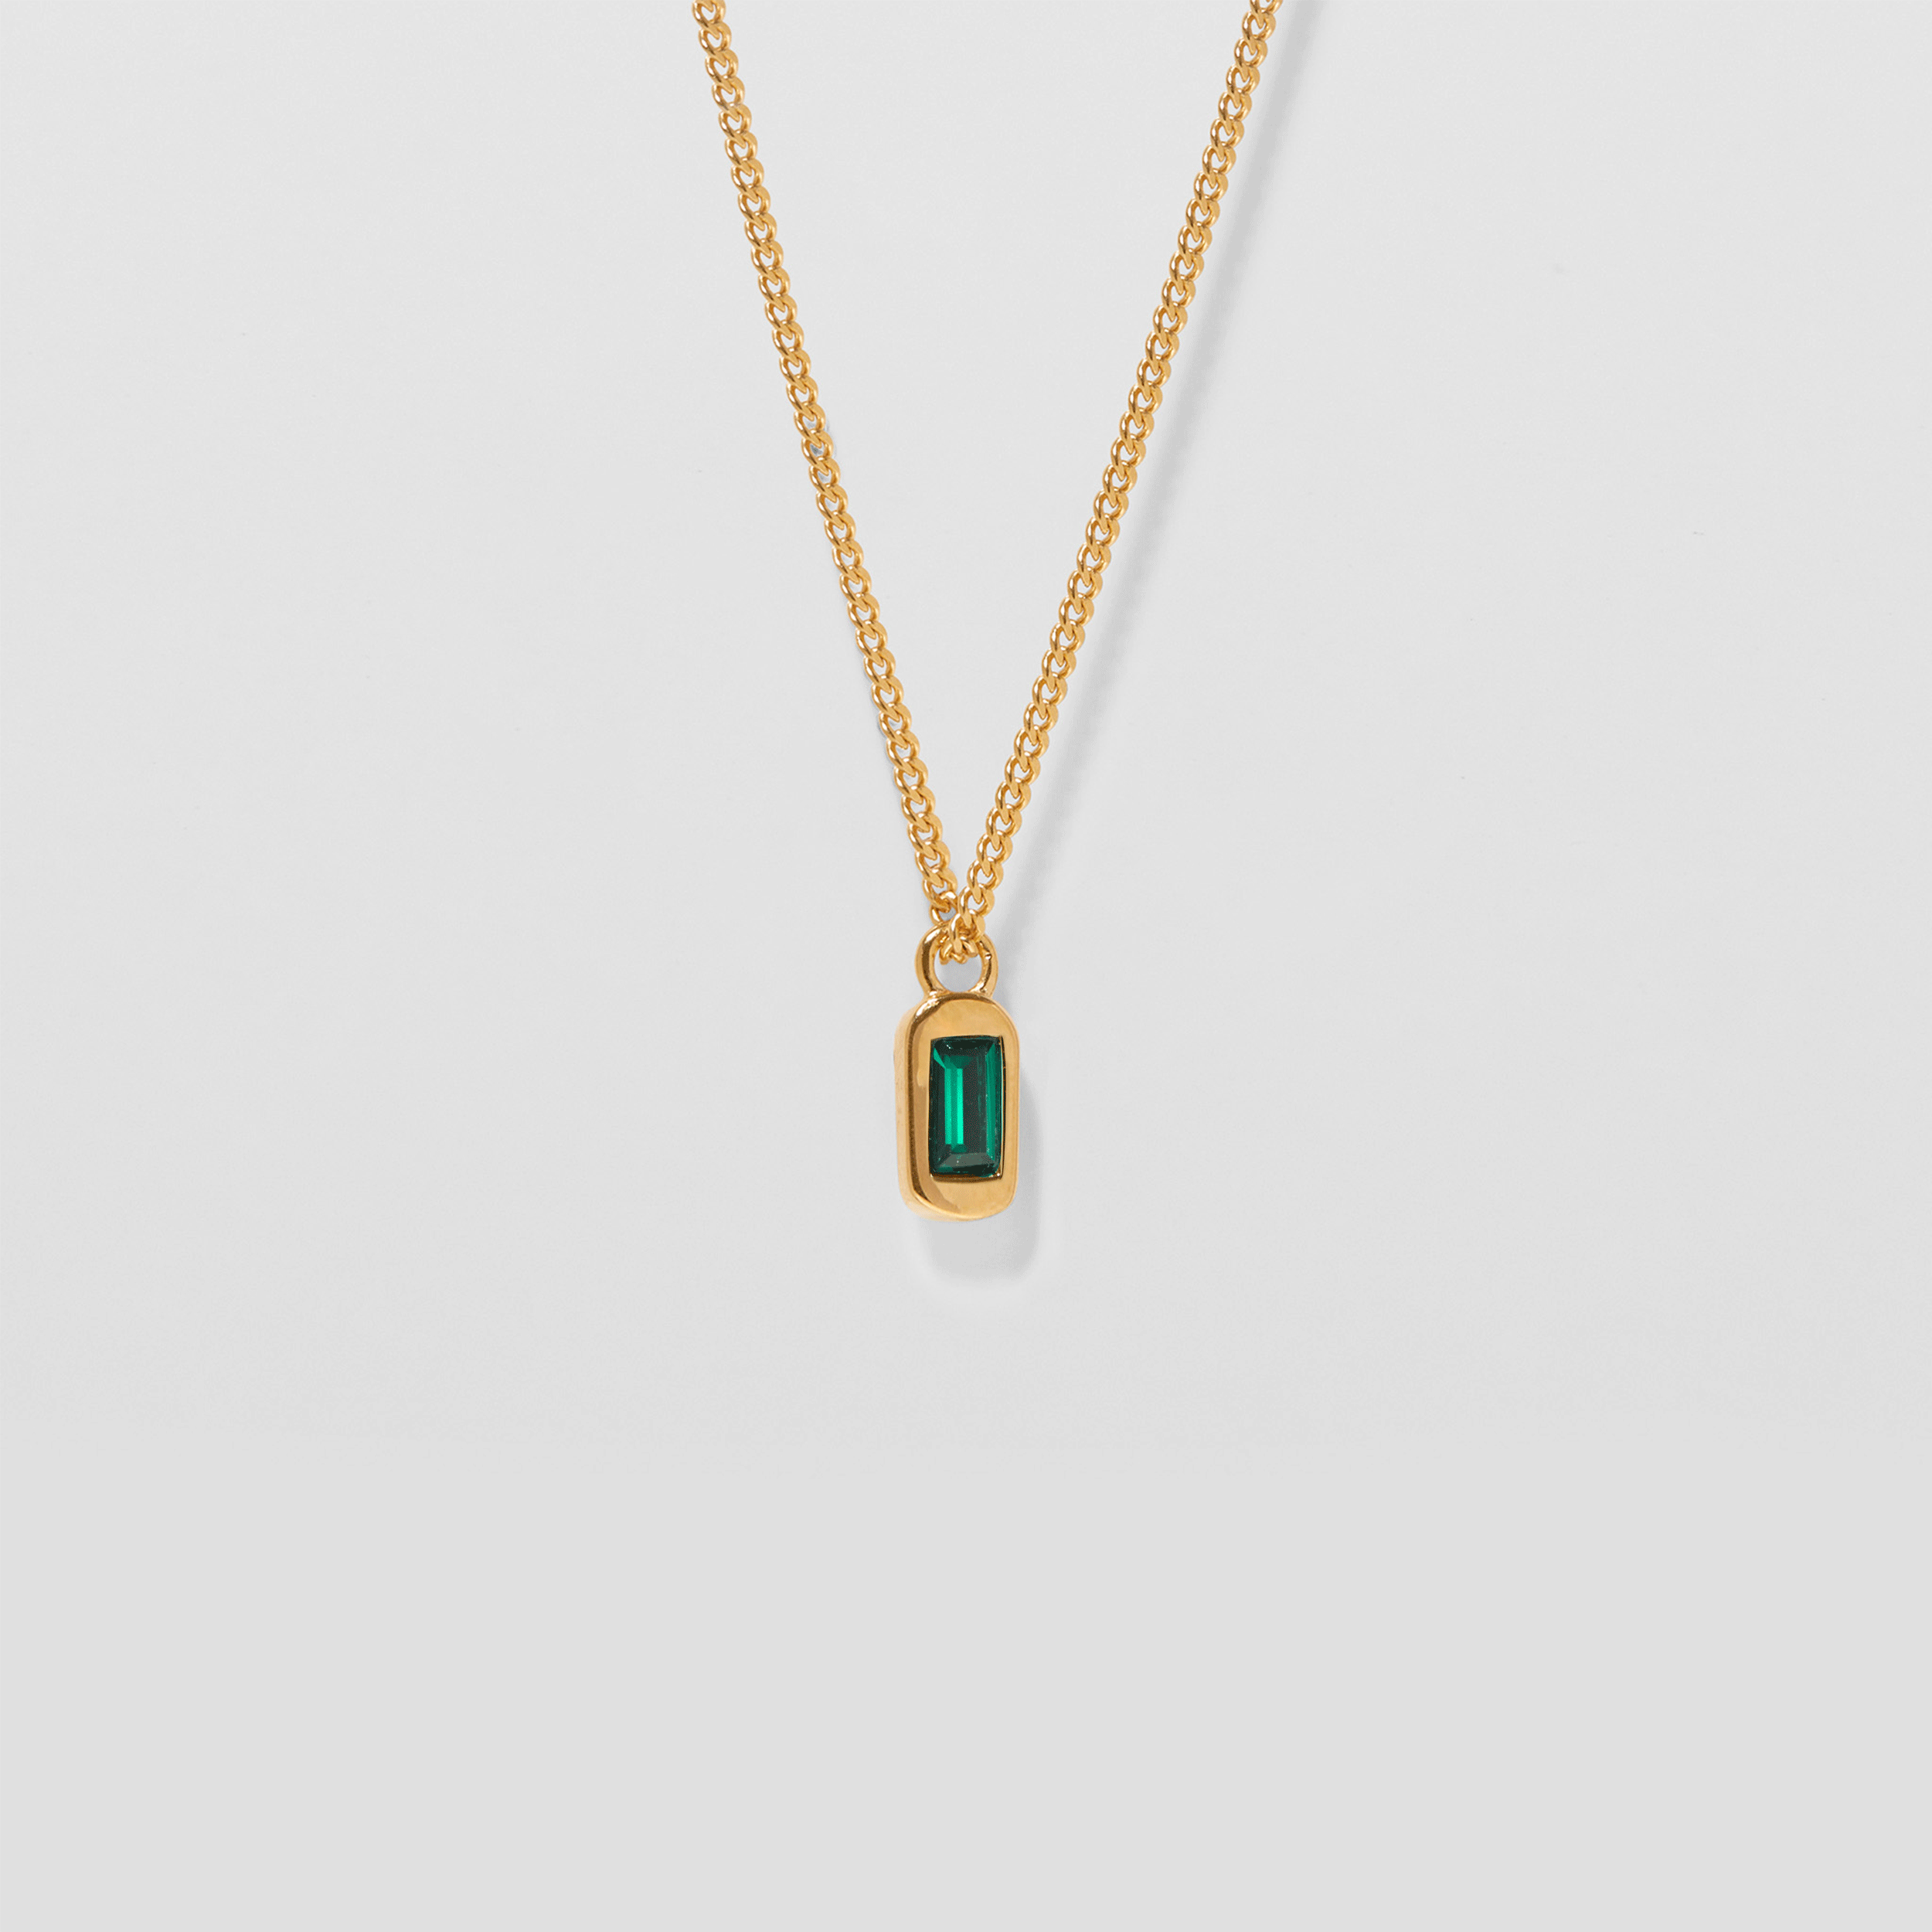 Unique Necklace Green Crystals